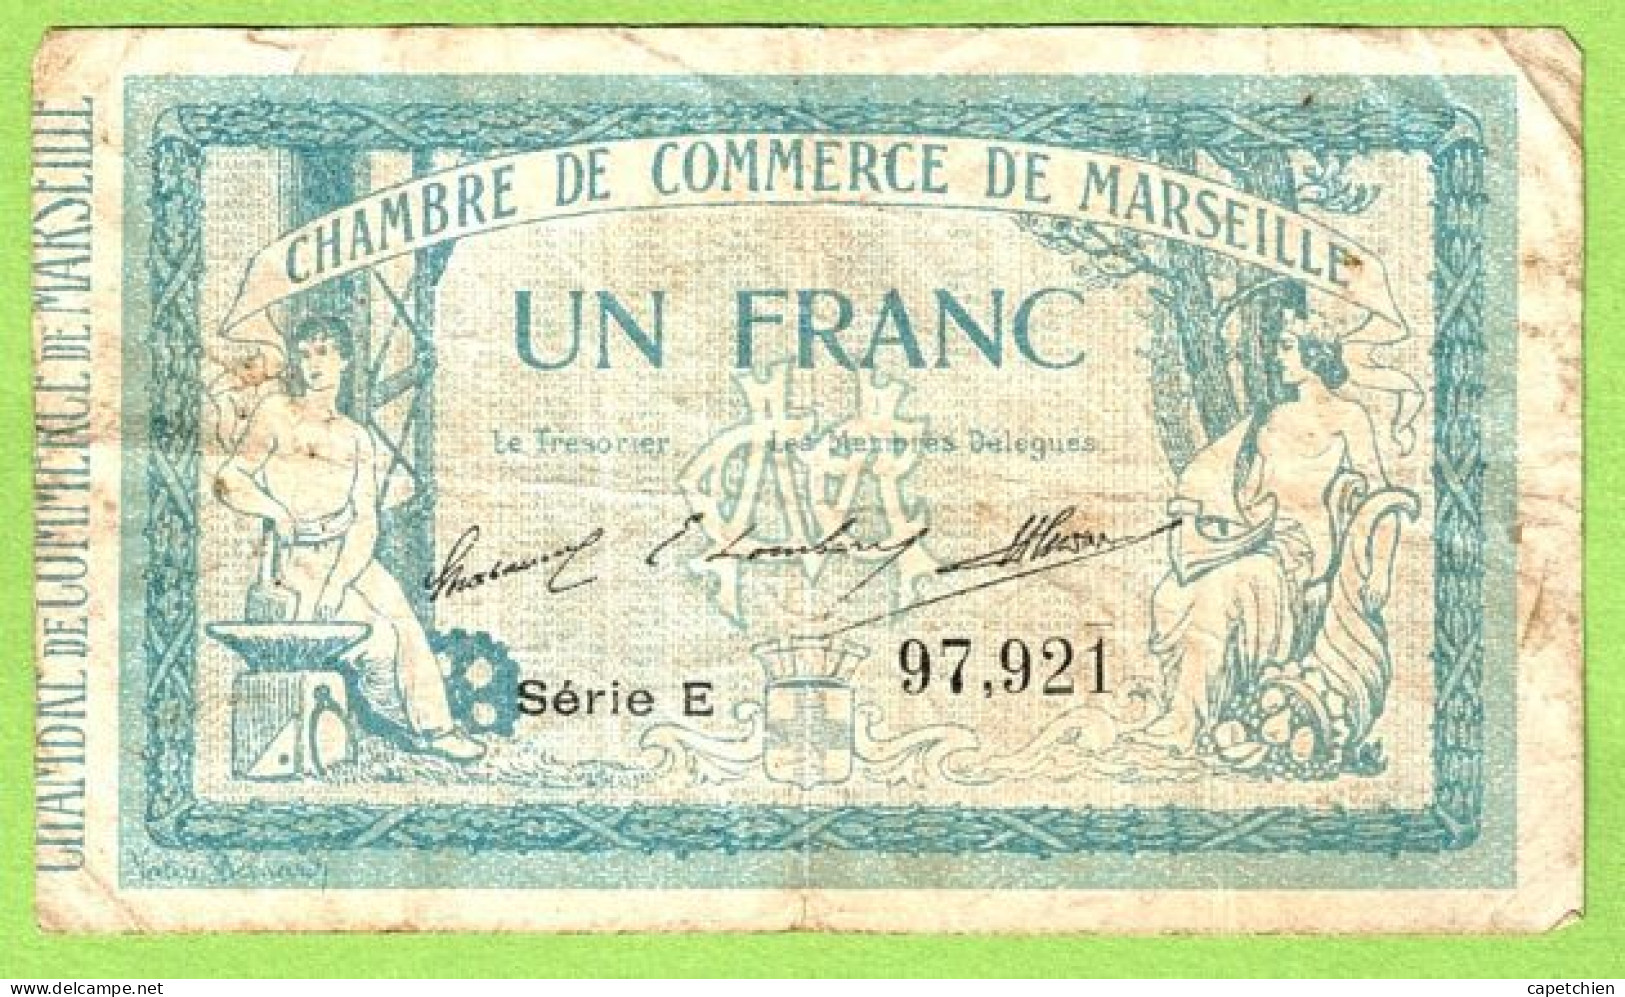 FRANCE / CHAMBRE De COMMERCE / MARSEILLE / 1 FRANC / 13 AOUT 1914 / N° 97921 / SERIE E - Camera Di Commercio